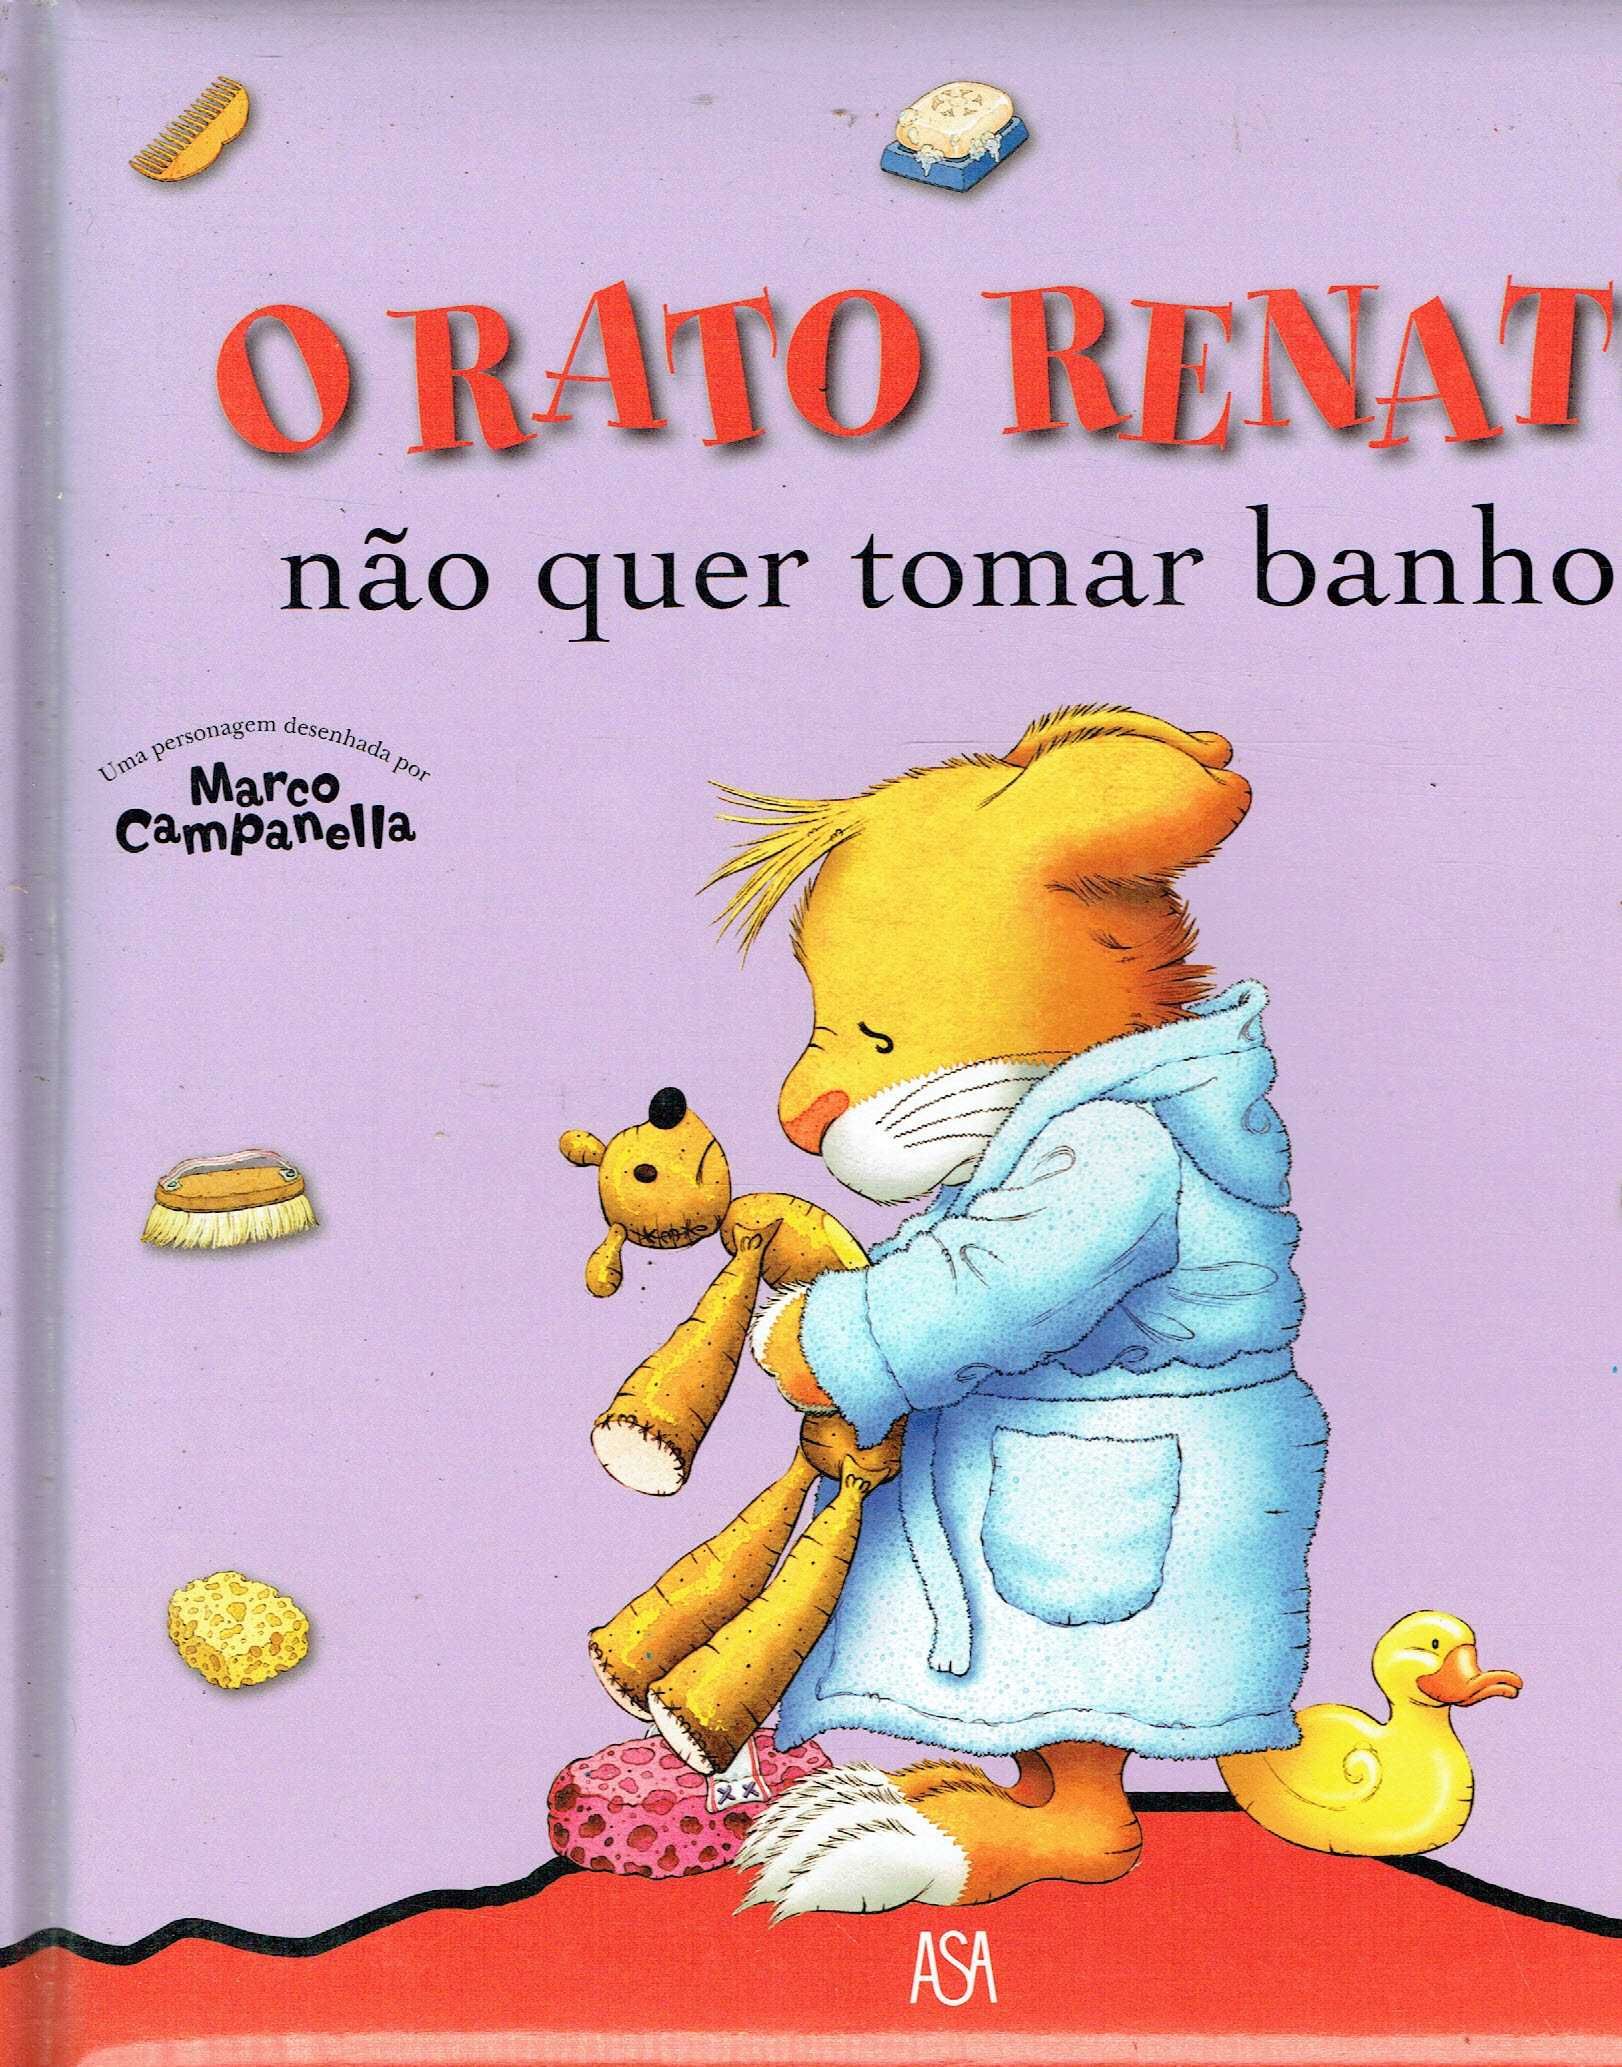 7886

Coleção Rato Renato

edição ASA